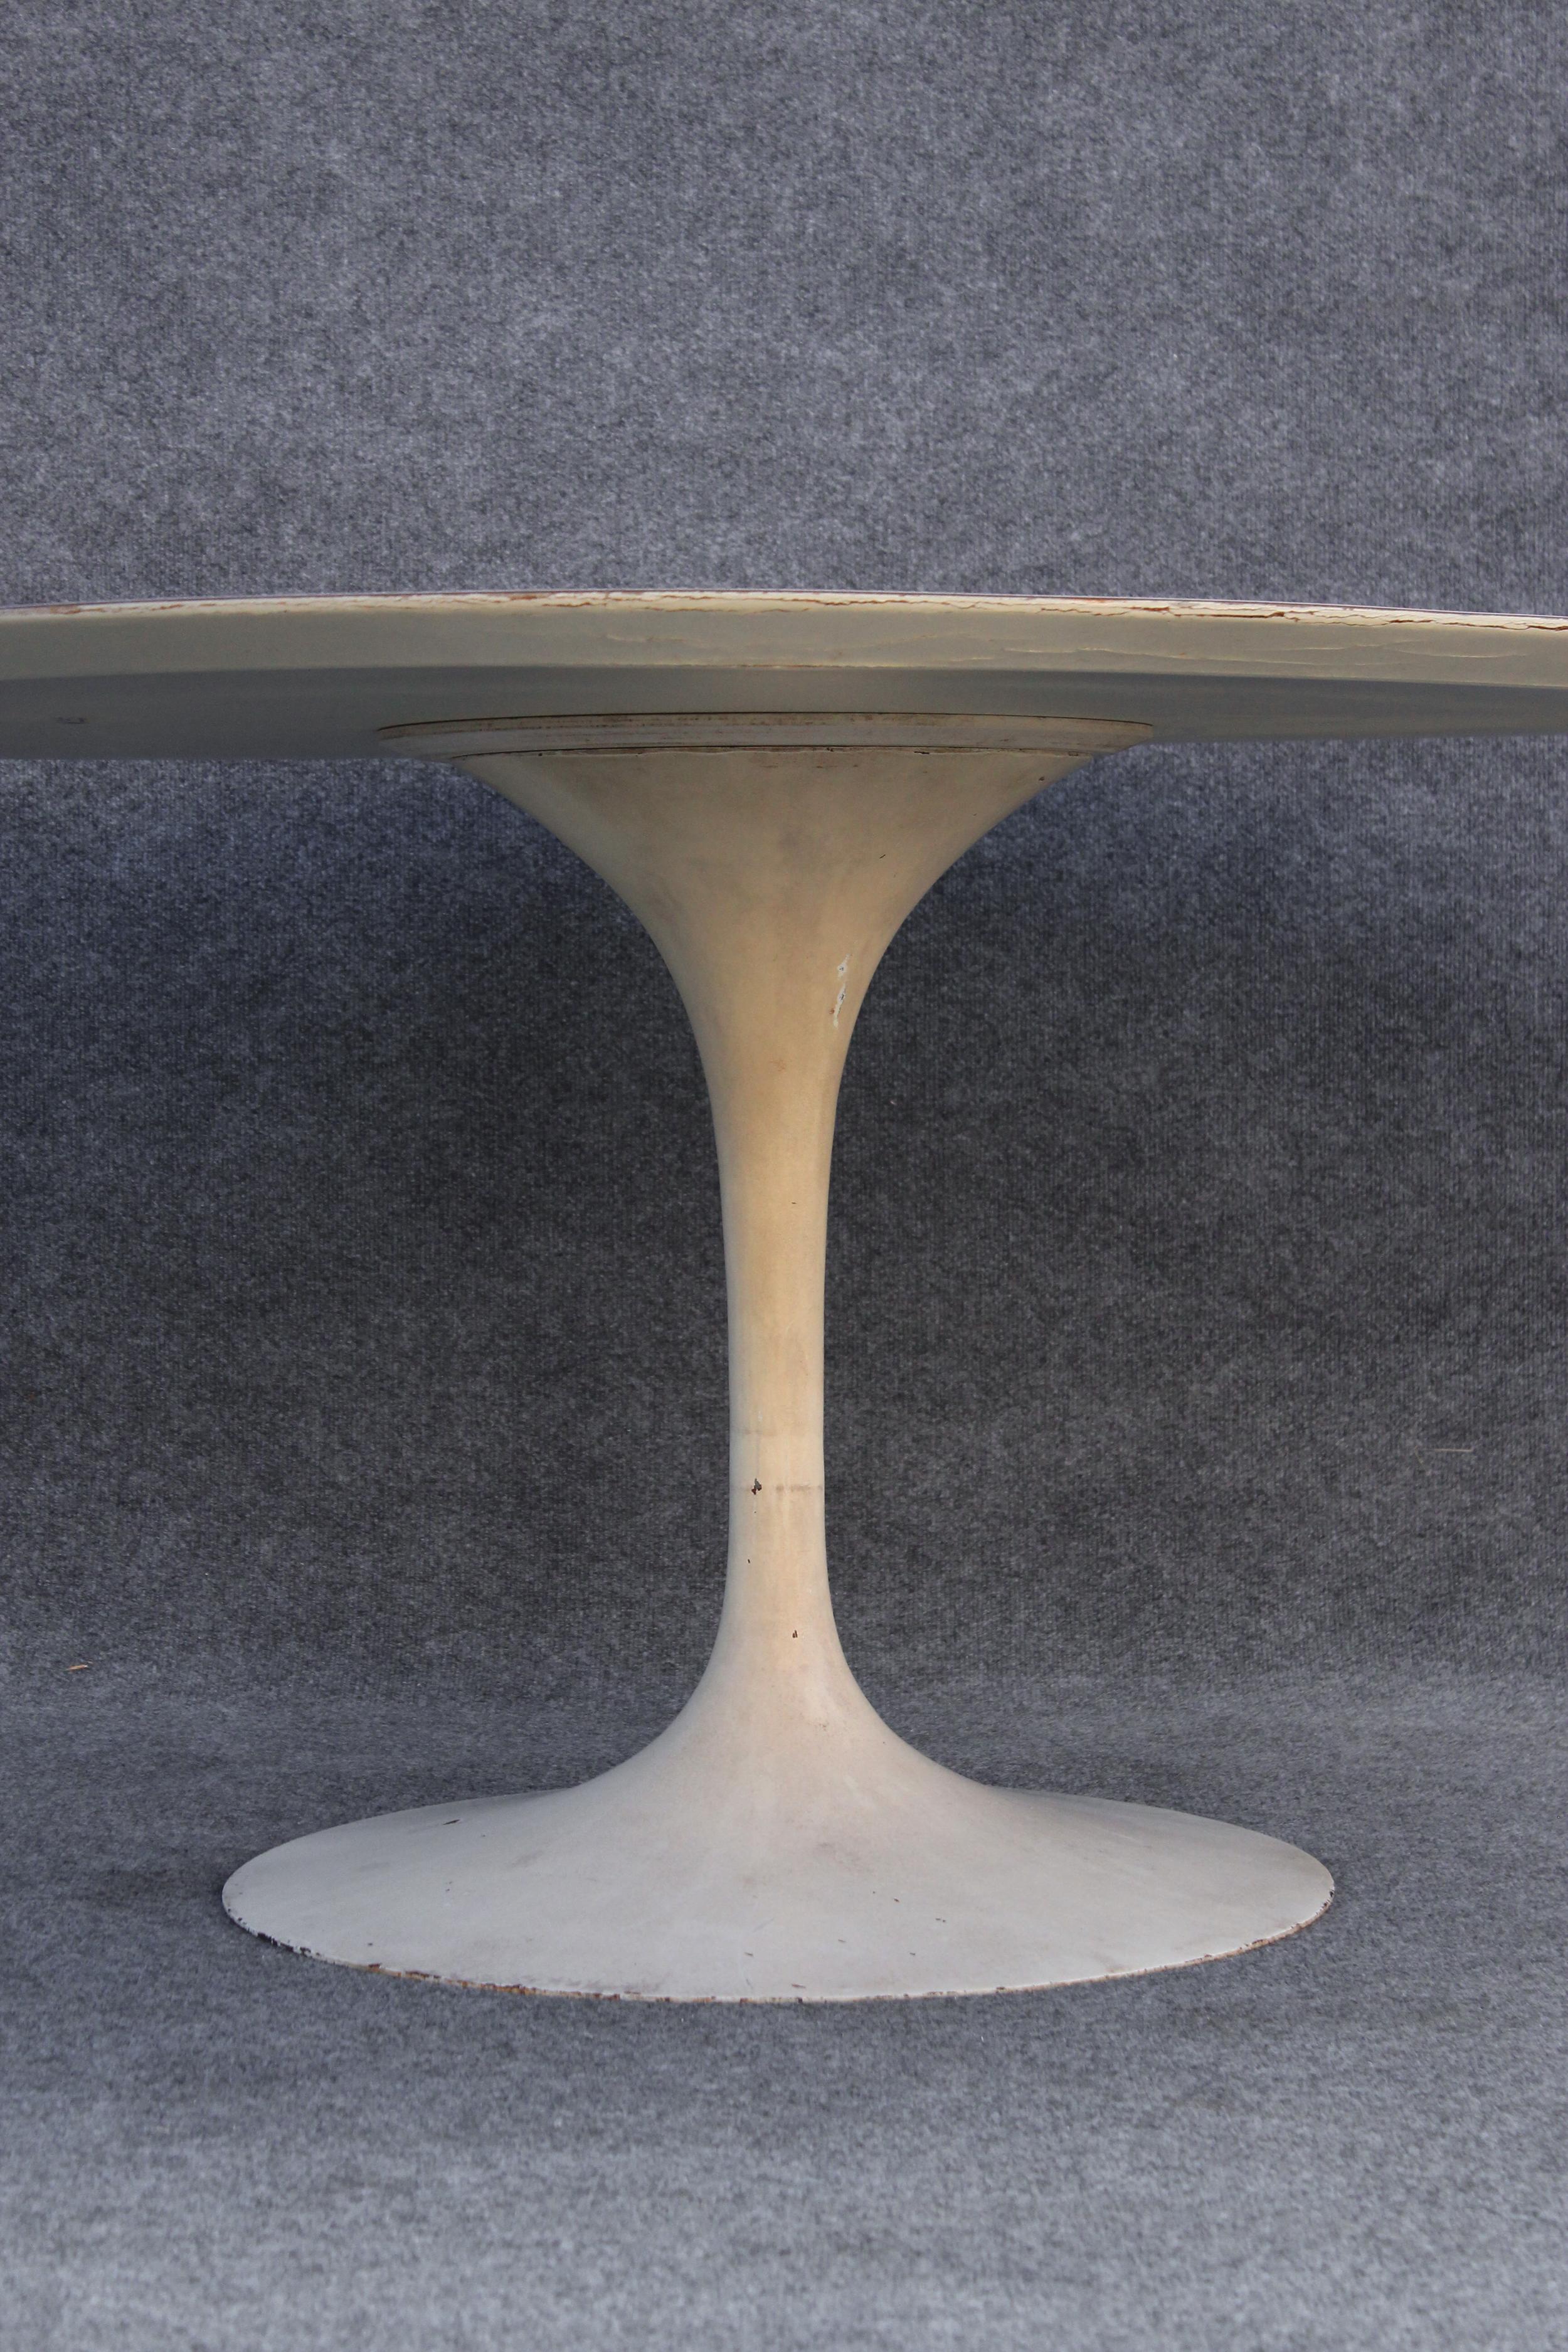 Conçue en 1957 par Eero Saarinen, cette table a été produite par Knoll peu de temps après. L'étiquette sur le dessous de la table indique qu'elle date d'environ 1961, ce qui en fait l'une des plus anciennes tables existantes. Le plateau est revêtu